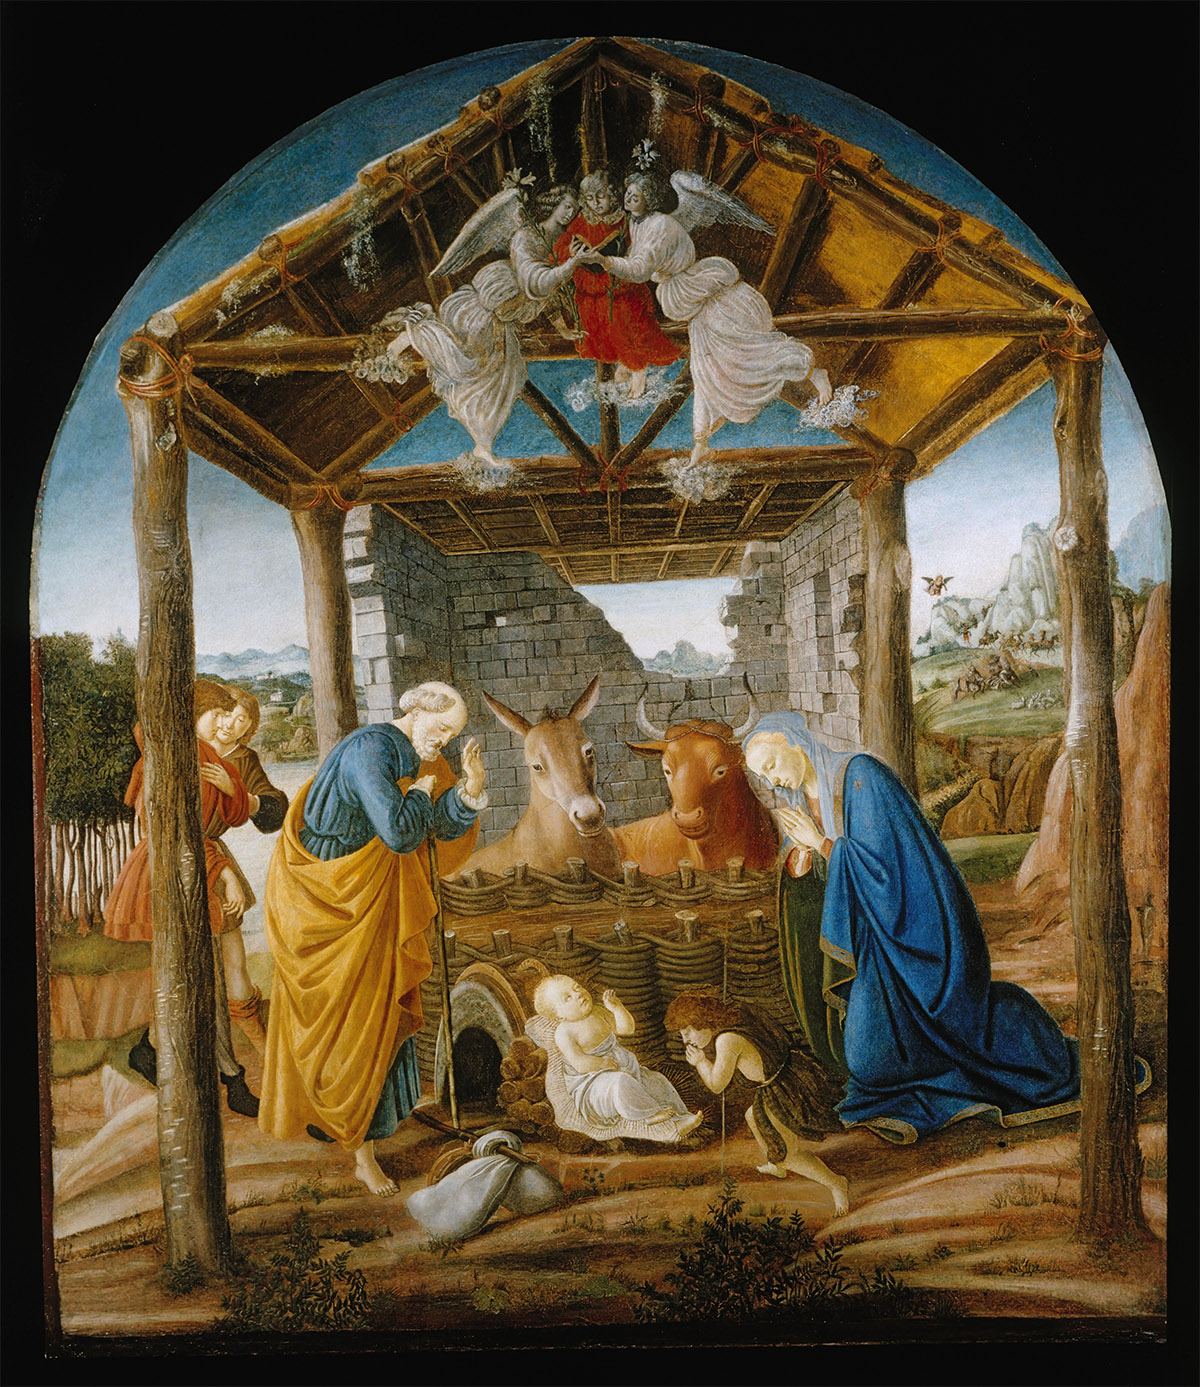 Natividad de Jesús, pintura del artista del Renacimiento italiano, Sandro Botticelli.